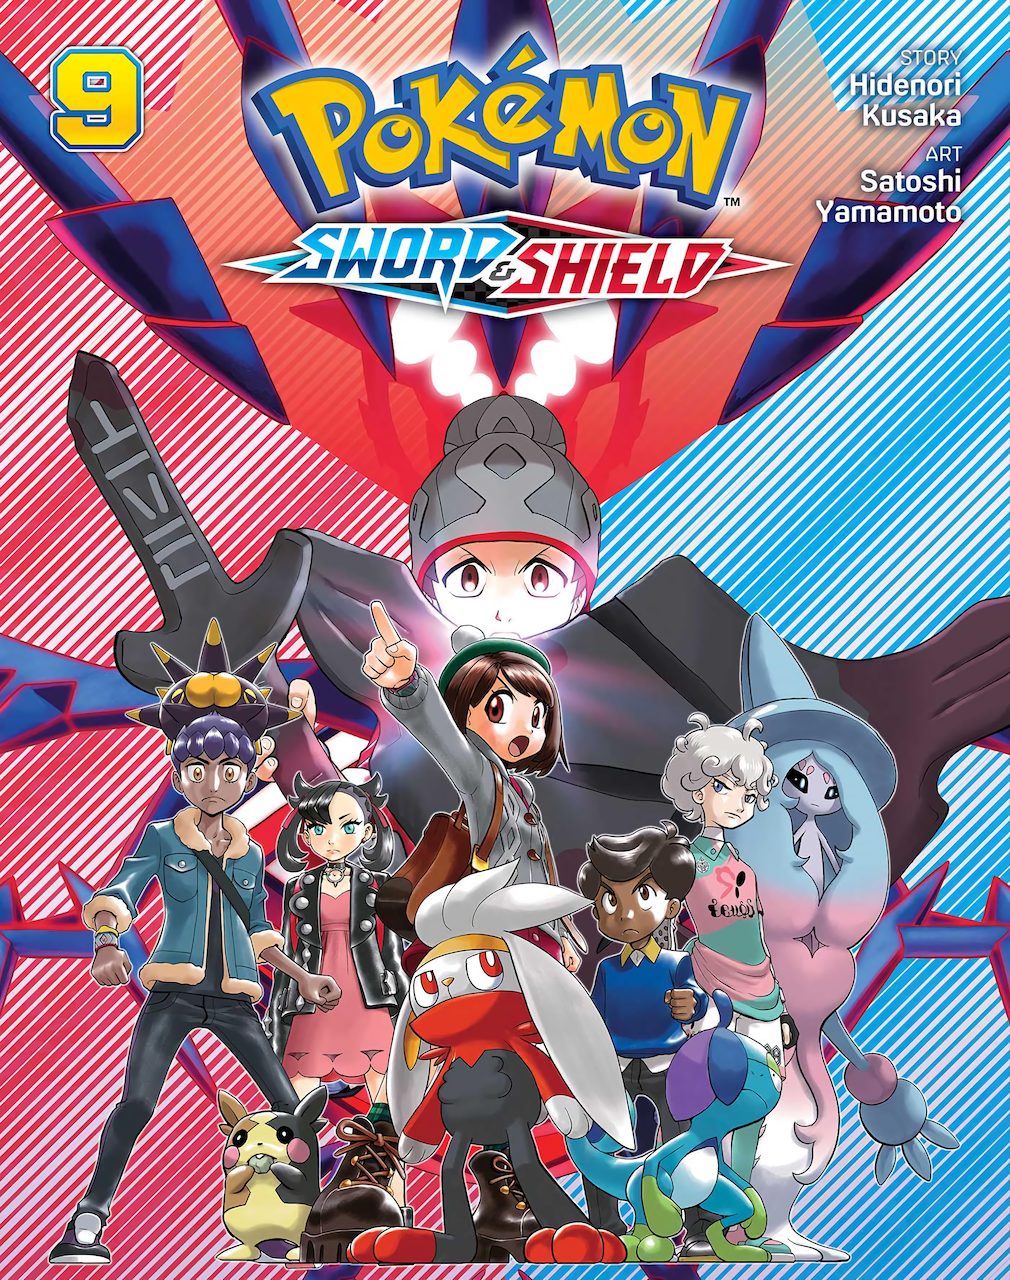 Pokemon: Sword & Shield, Vol. 2